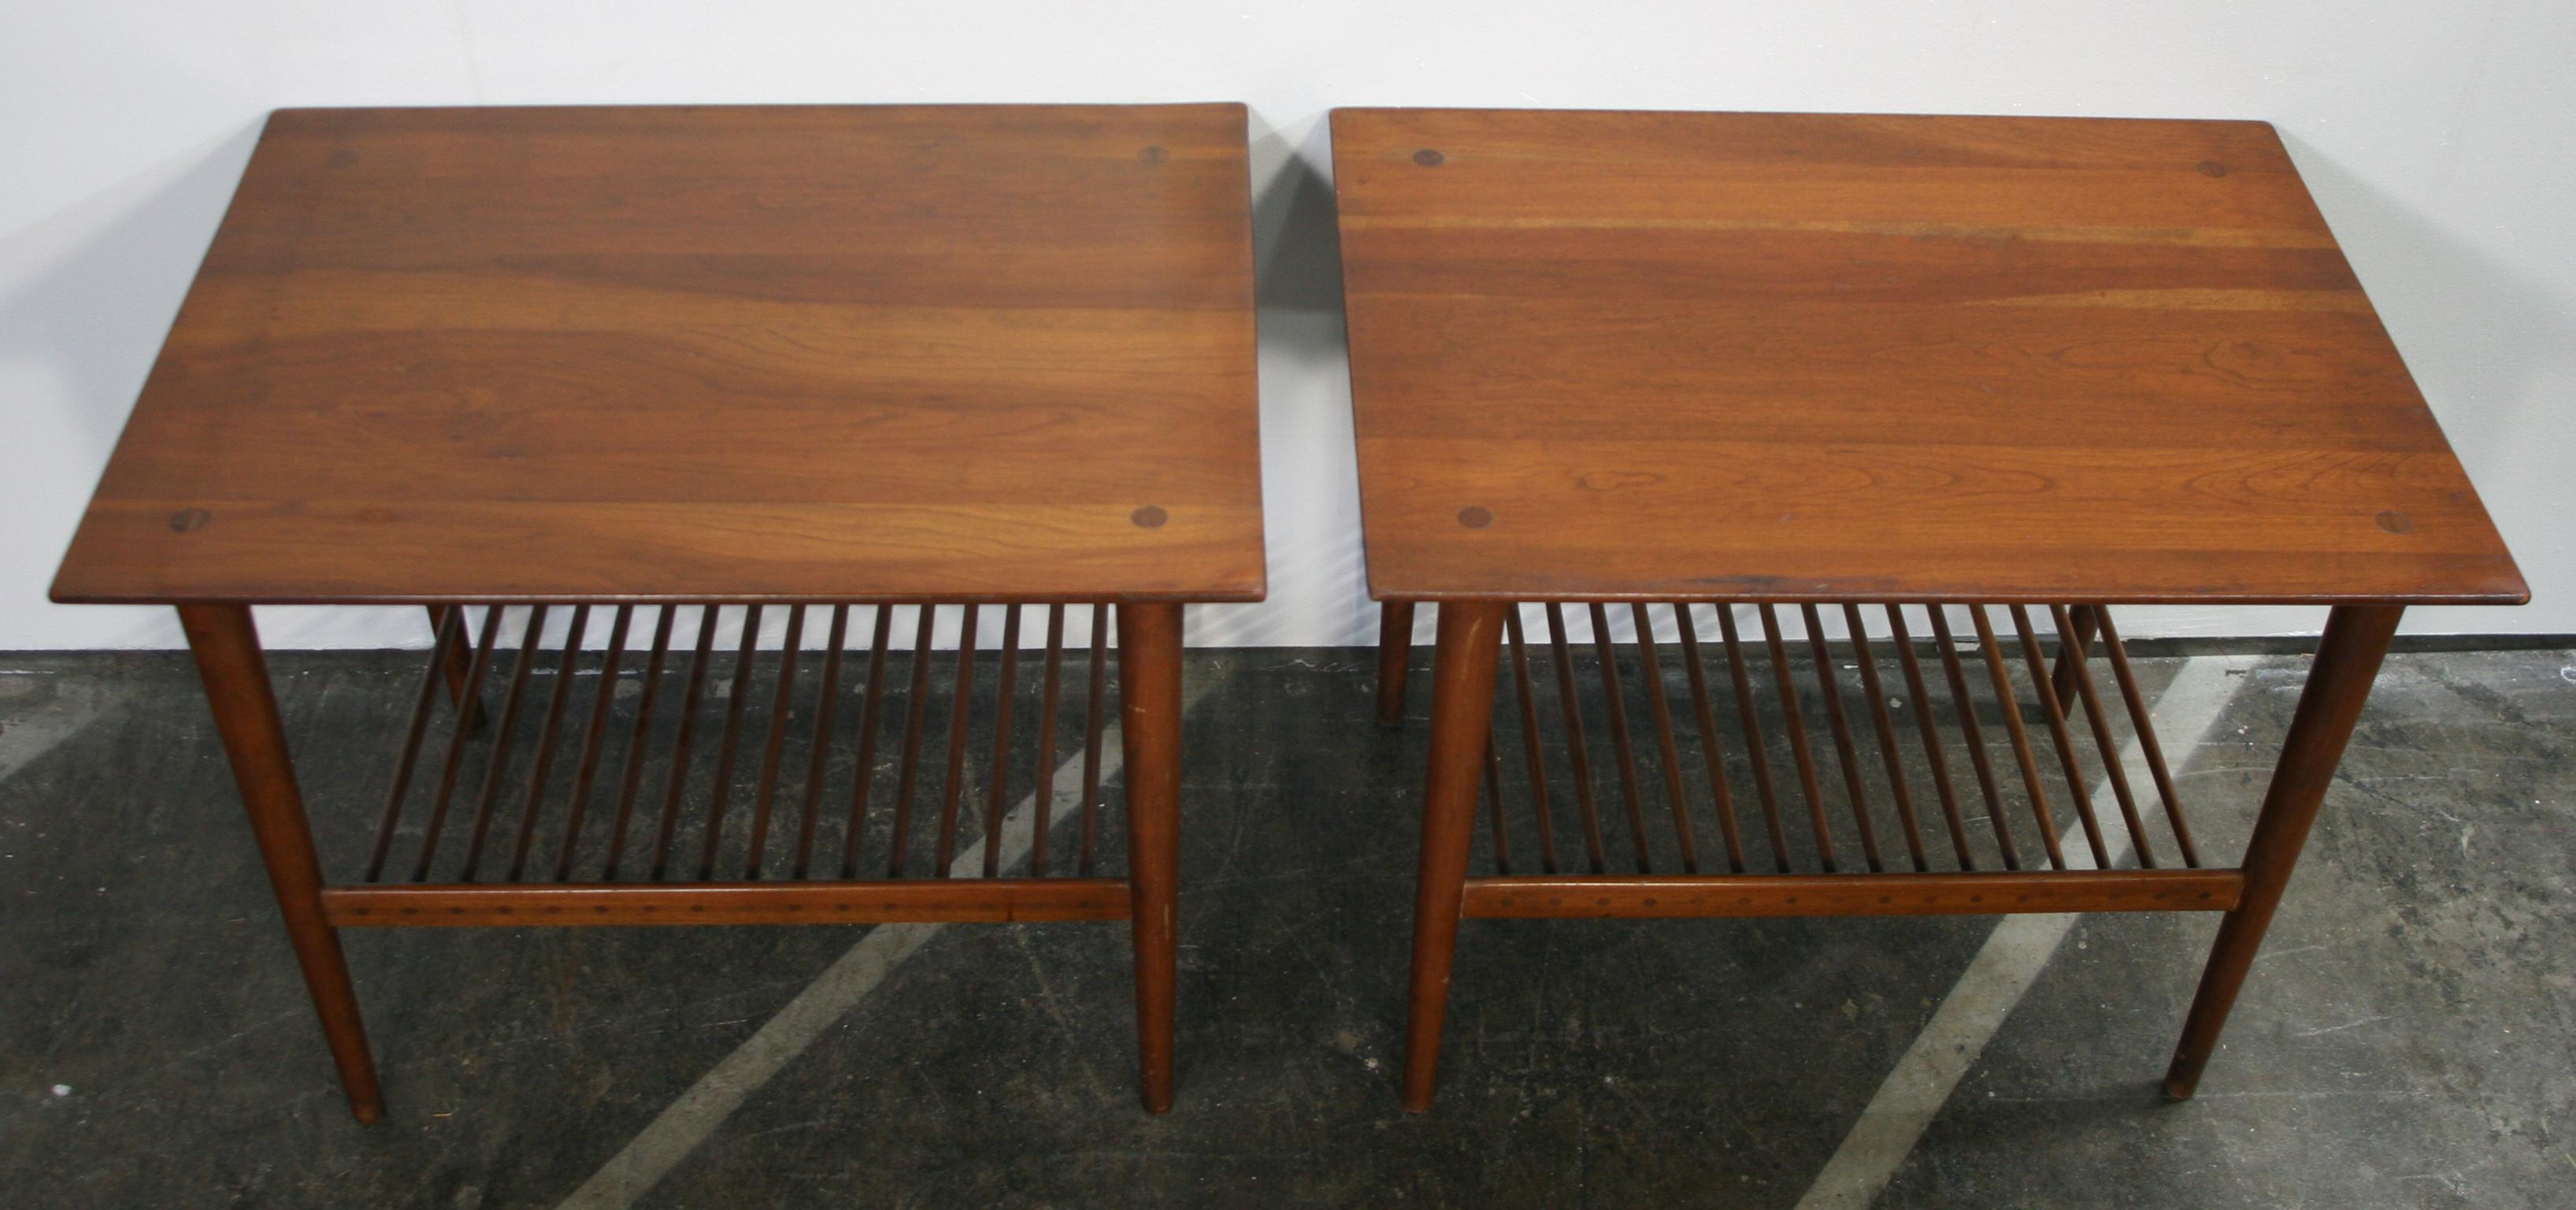 Mid-Century Modern Midcentury Kipp Stewart Walnut Nightstands Side End Tables Dowel Lower Shelf